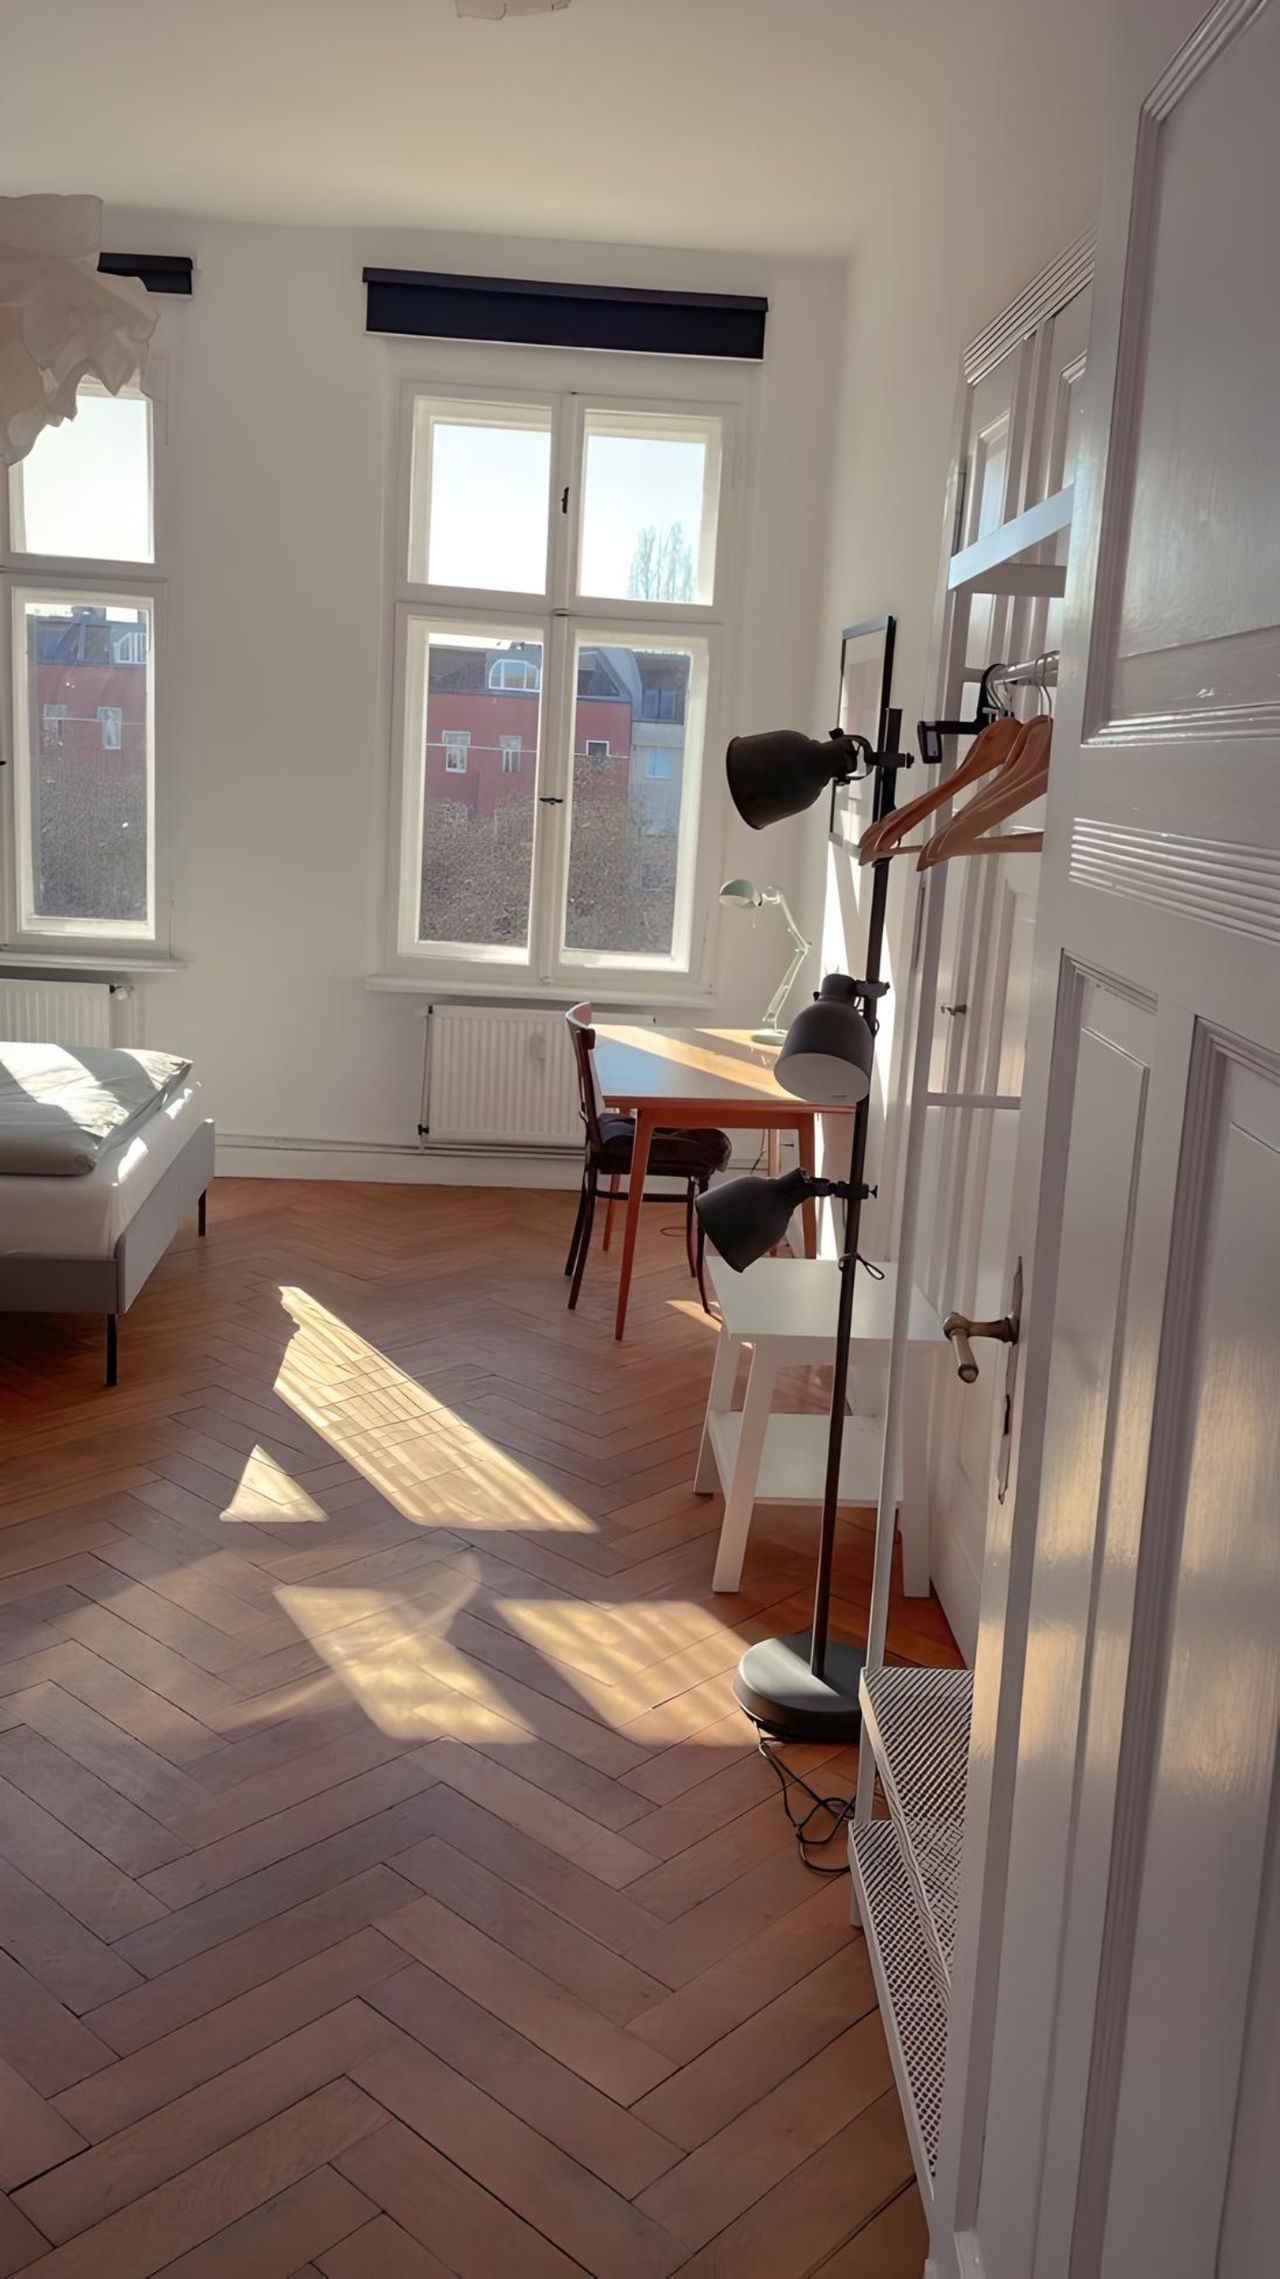 Cozy 3 bedroom apartment in the middle of Berlin Kreuzberg!